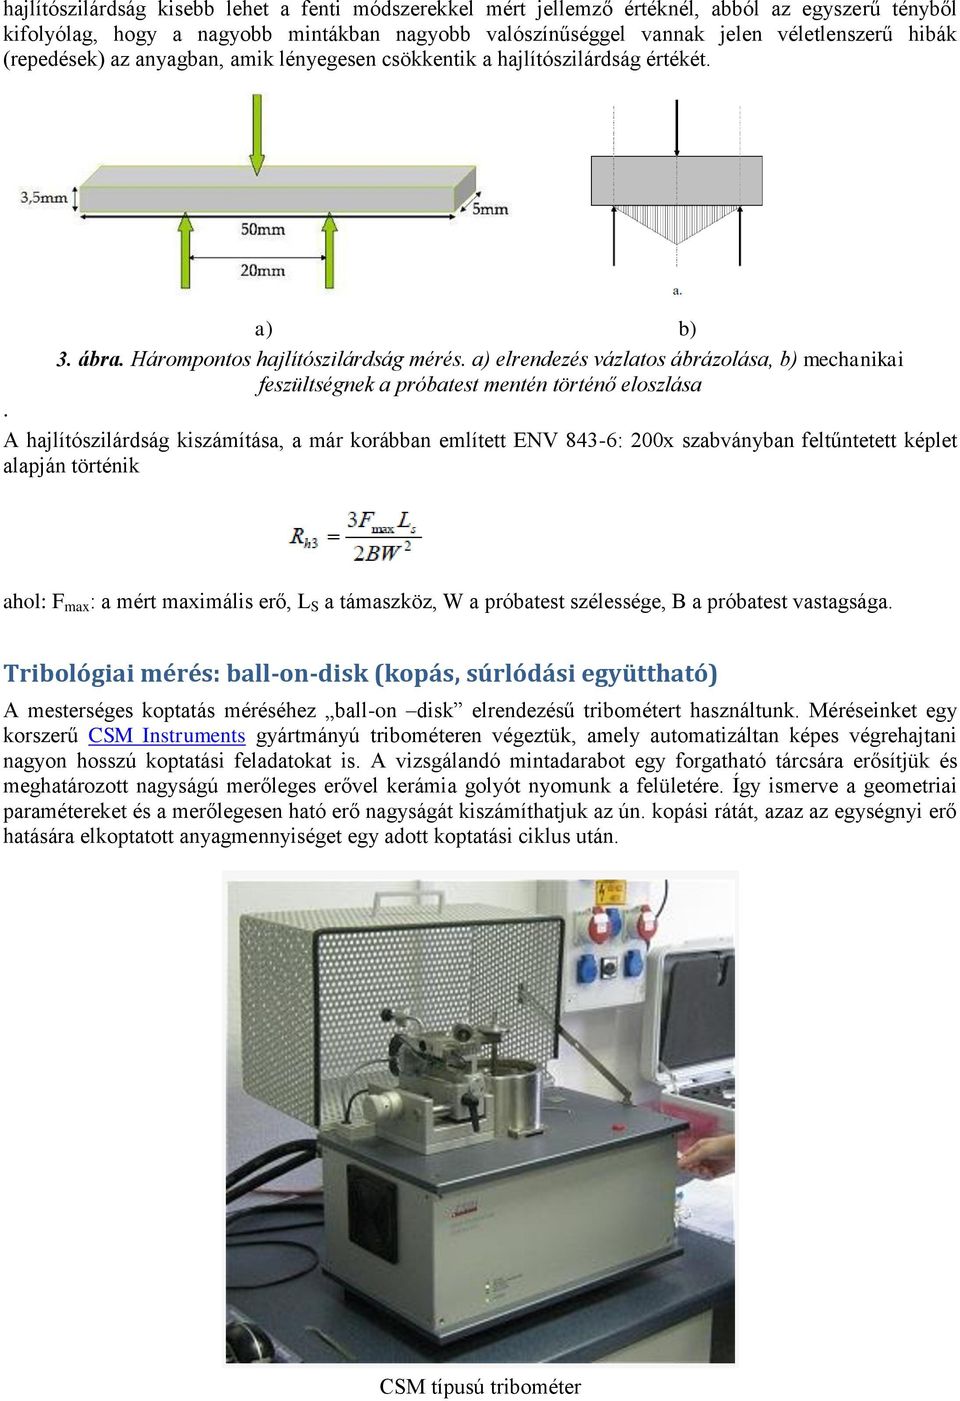 Őrlés. Pásztázó elektronmikroszkópia (SEM) - PDF Ingyenes letöltés